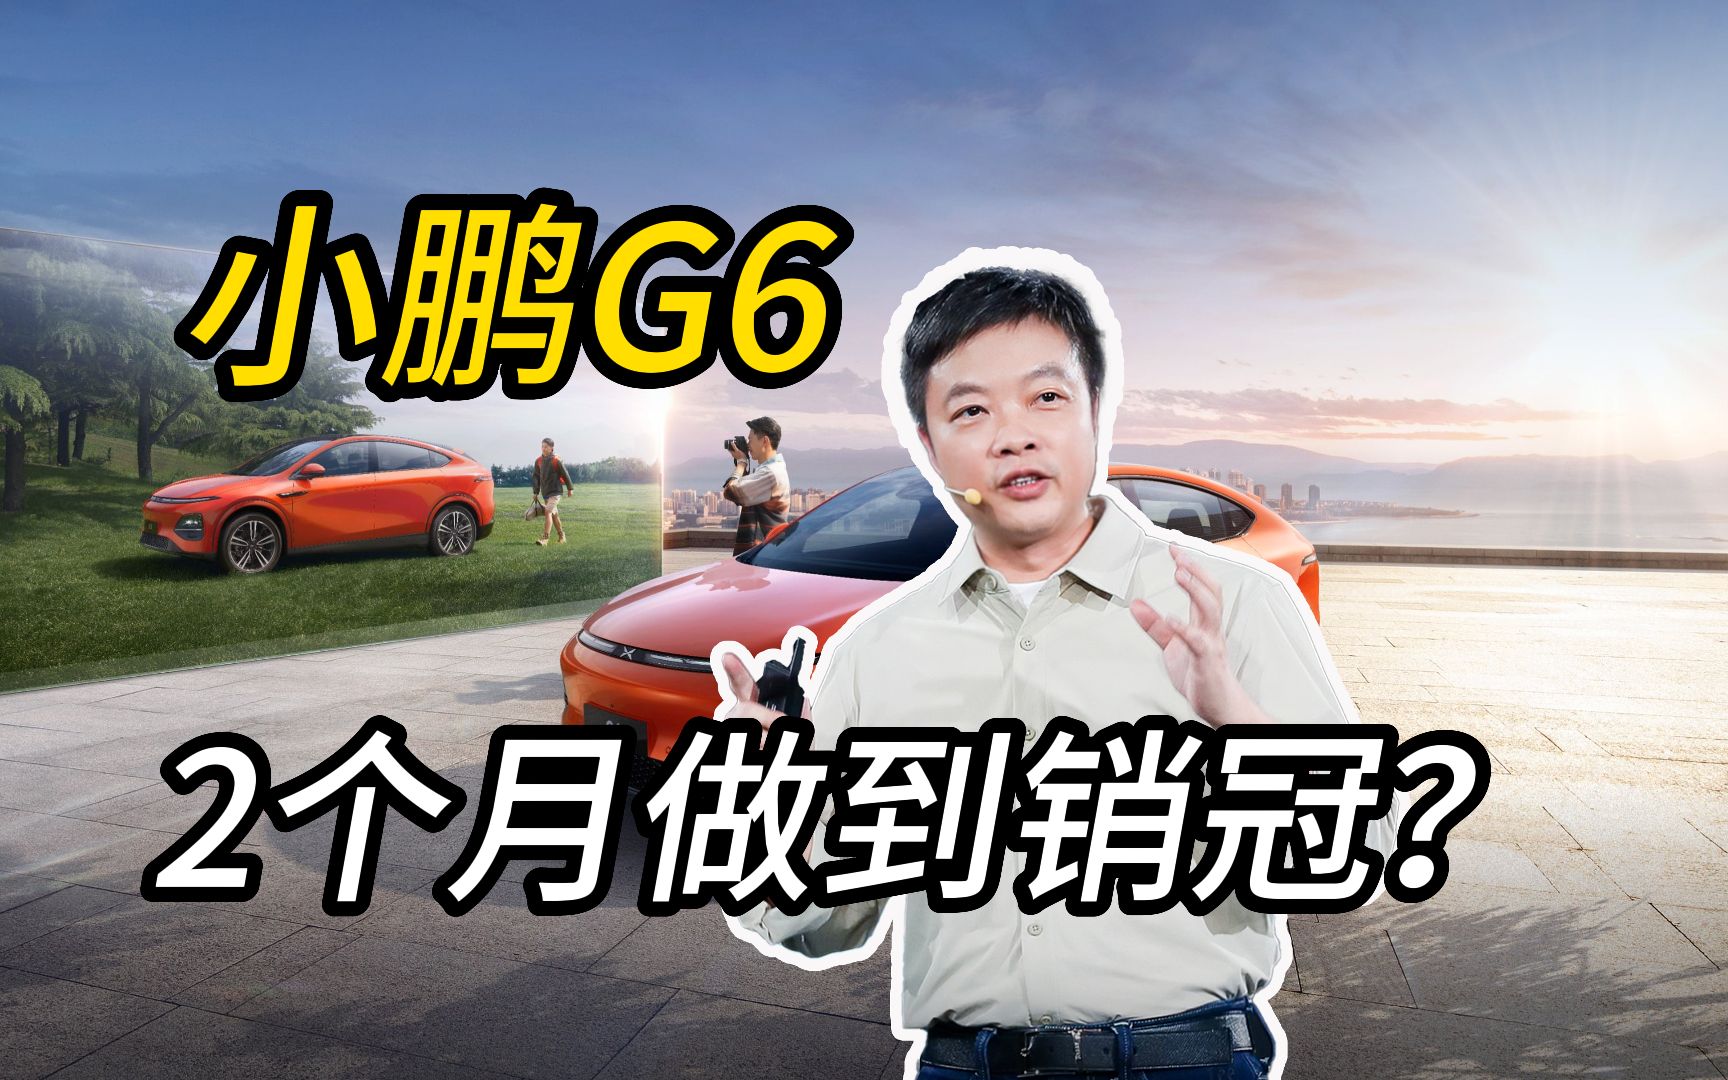 #小鹏G6 要两个月干到销量冠军，你相信吗？#小鹏汽车 #何小鹏